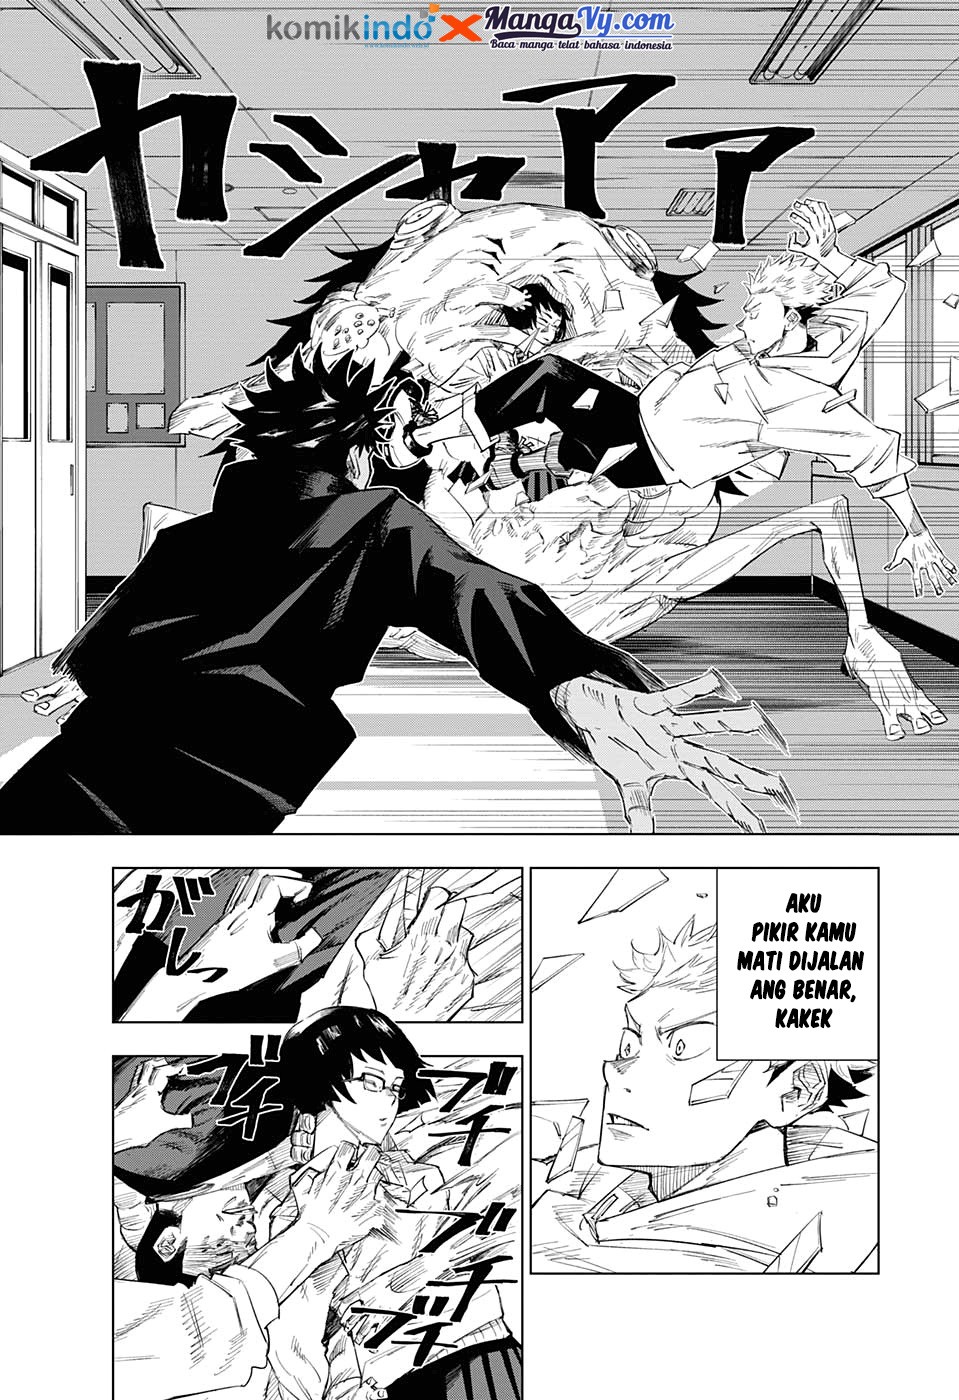 Jujutsu Kaisen Chapter 1